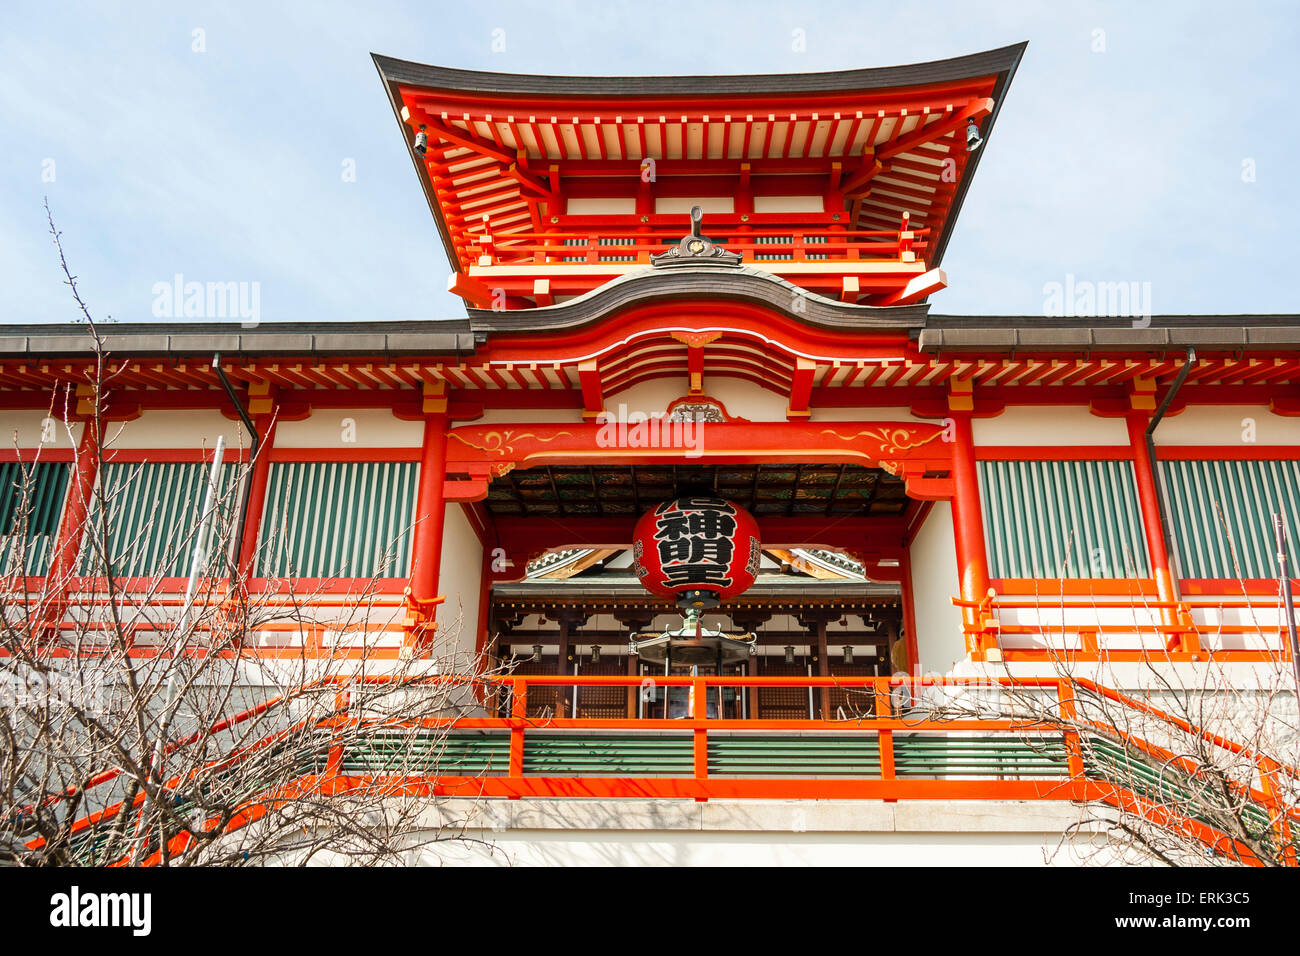 Il Tempio di mondo Yakujin in Giappone. Una porta Shintoin vermiglio, verde e bianco, con grande chochin, lanterna di carta appesa al soffitto. Foto Stock